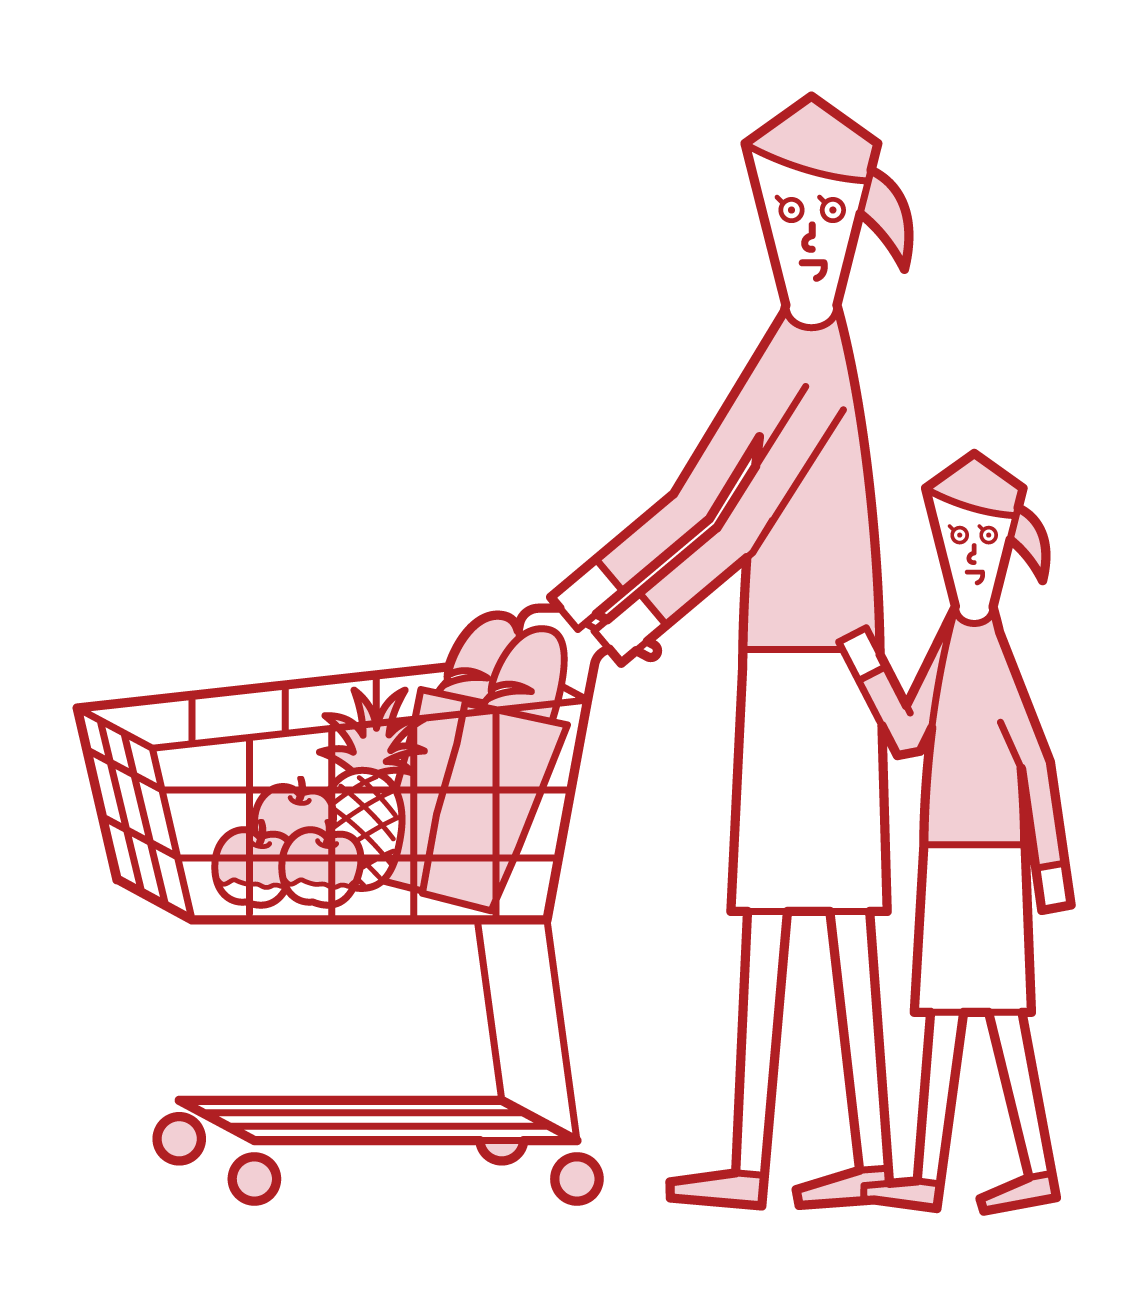 슈퍼마켓에서 쇼핑하는 부모와 자녀의 그림